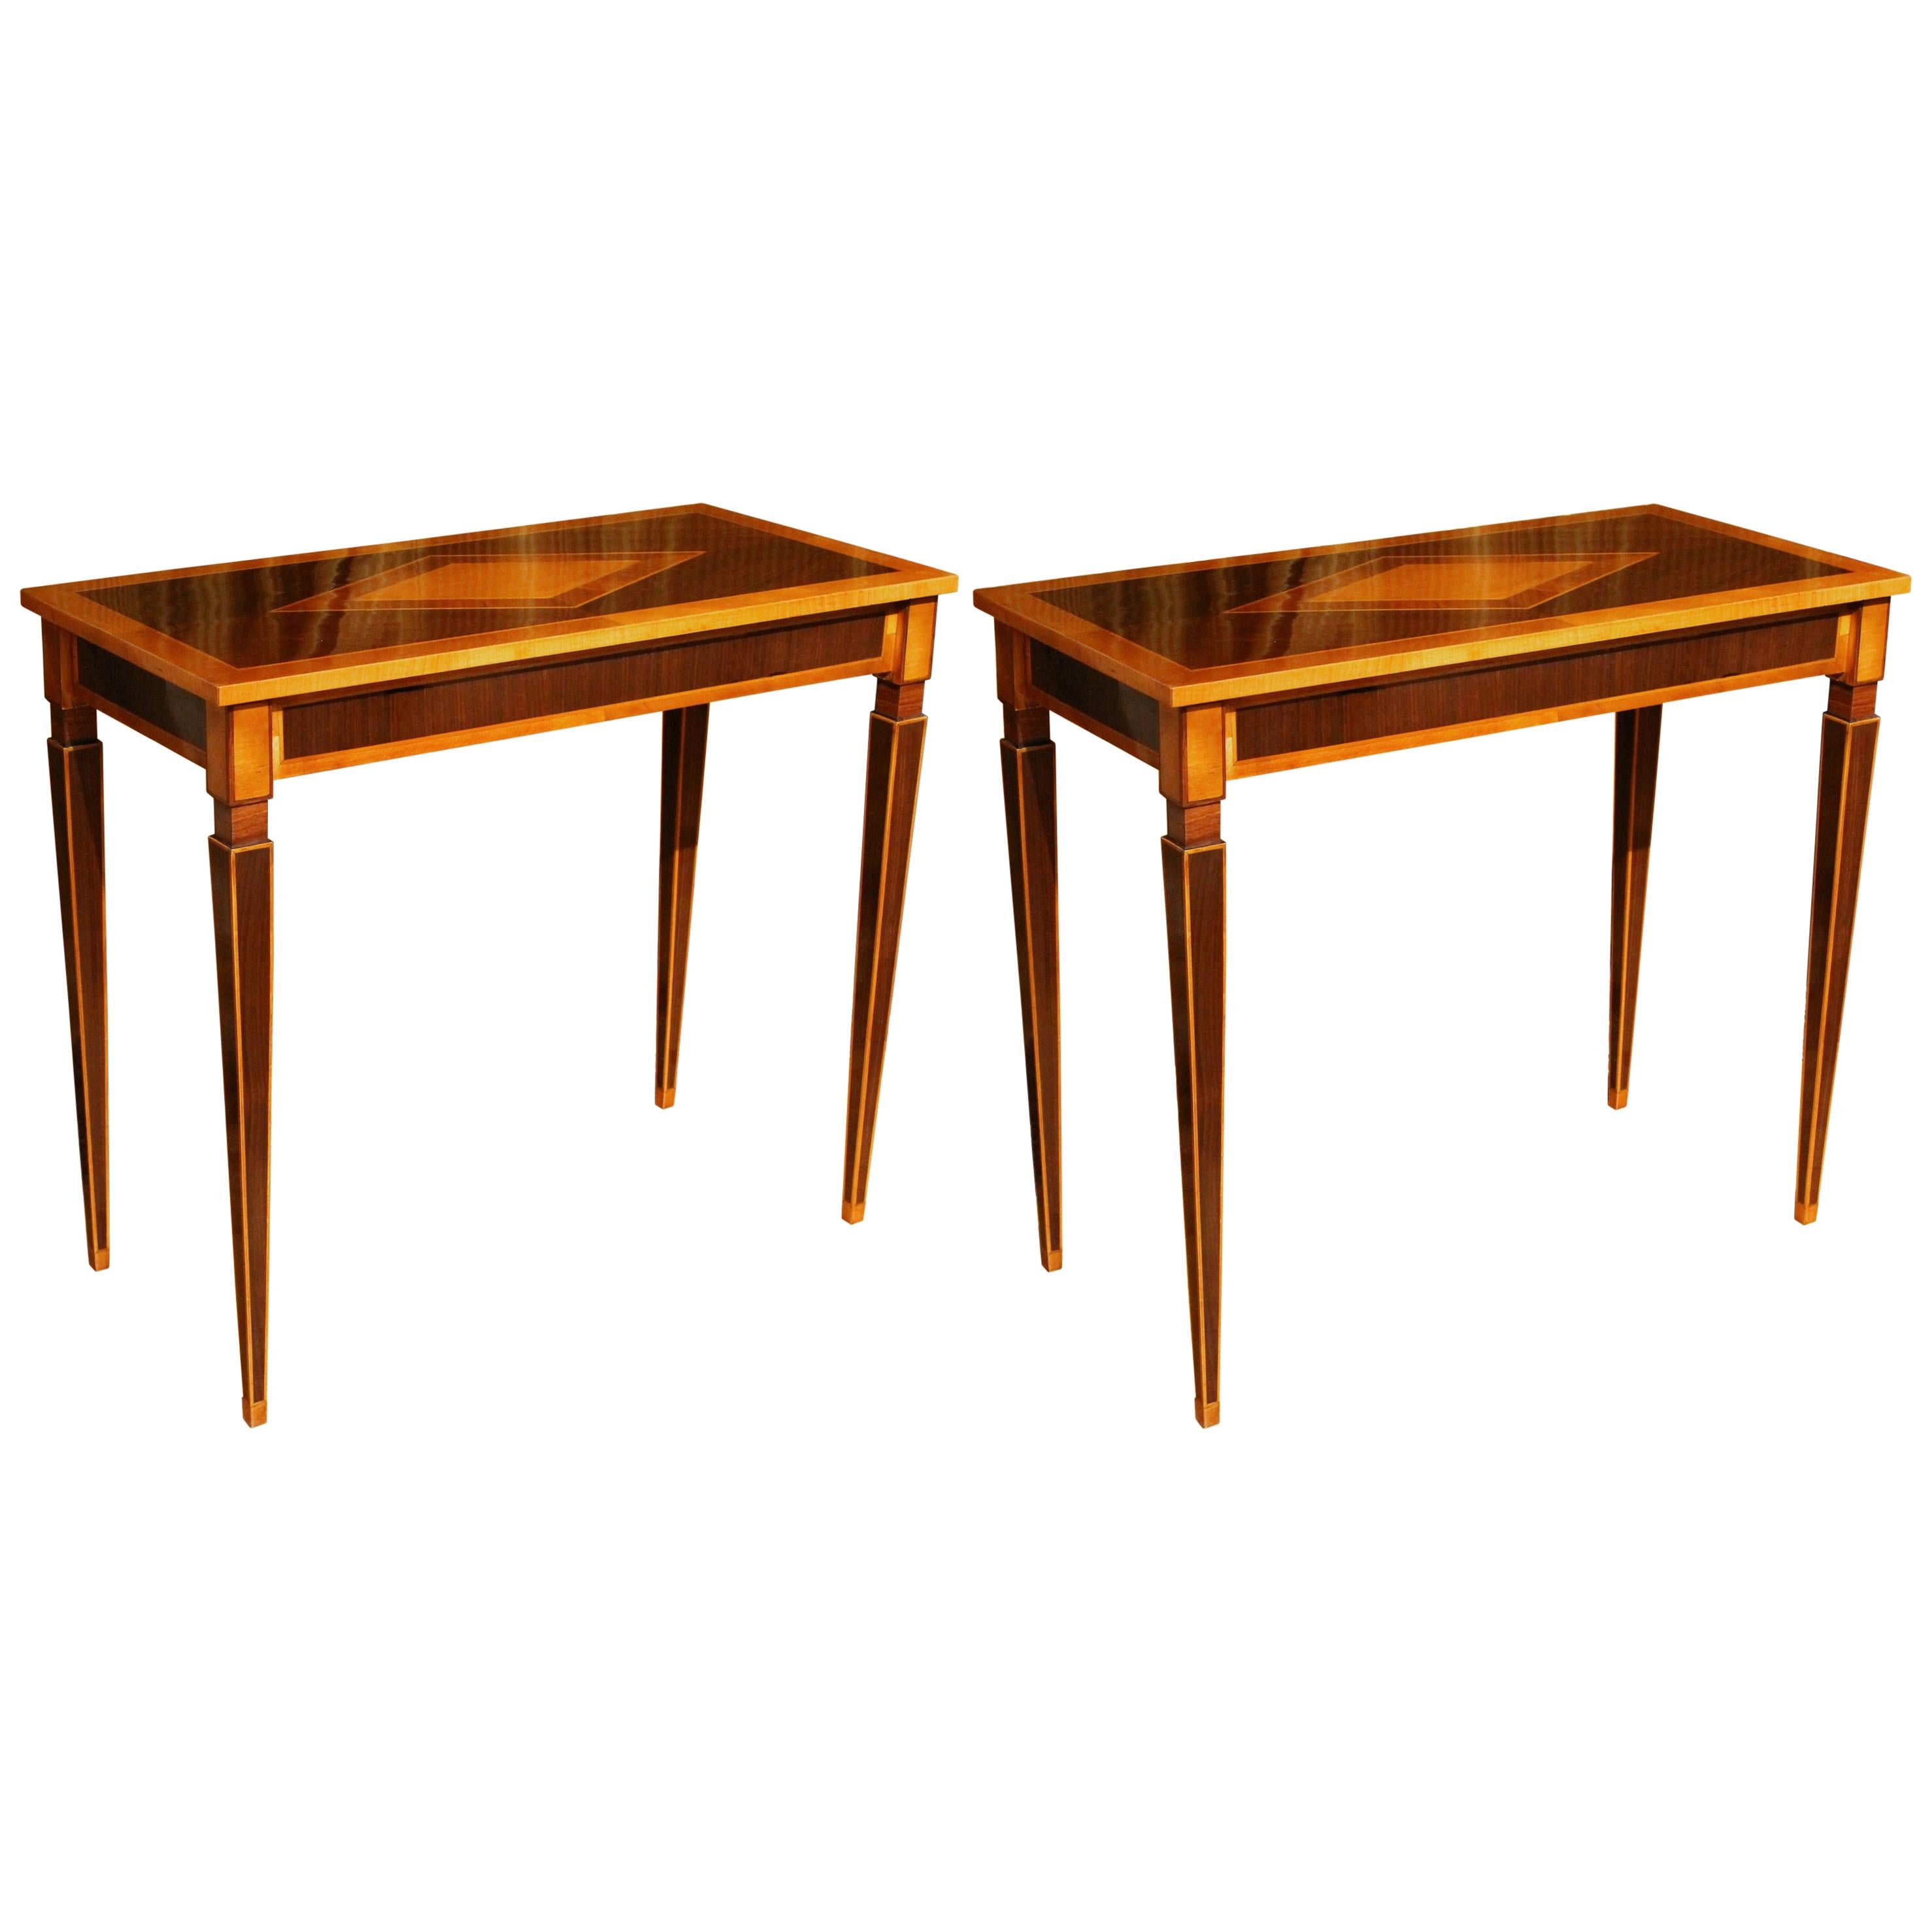 Italian Mahogany and Walnut Wood Narrow Louis XVI Style Console Tables